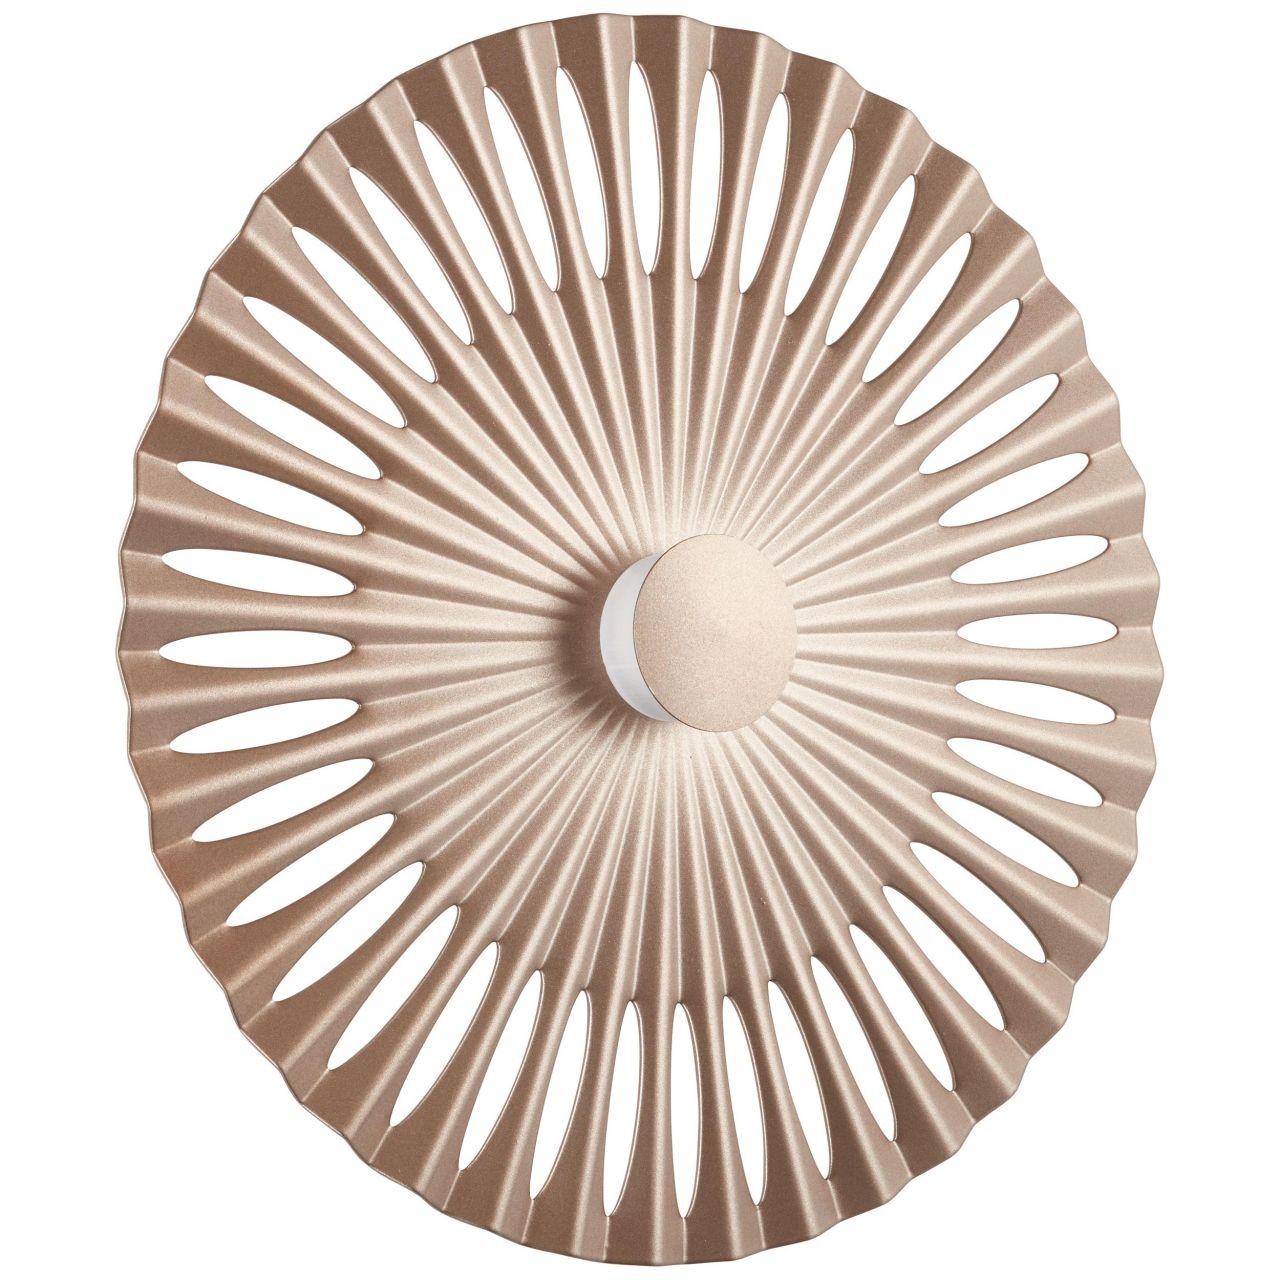 Brilliant LED Wandleuchte »Phinx«, 1 flammig-flammig, Ø 32 cm, dekorativer Lichteffekt, 1300 lm, warmweiß, Aluminium, braun